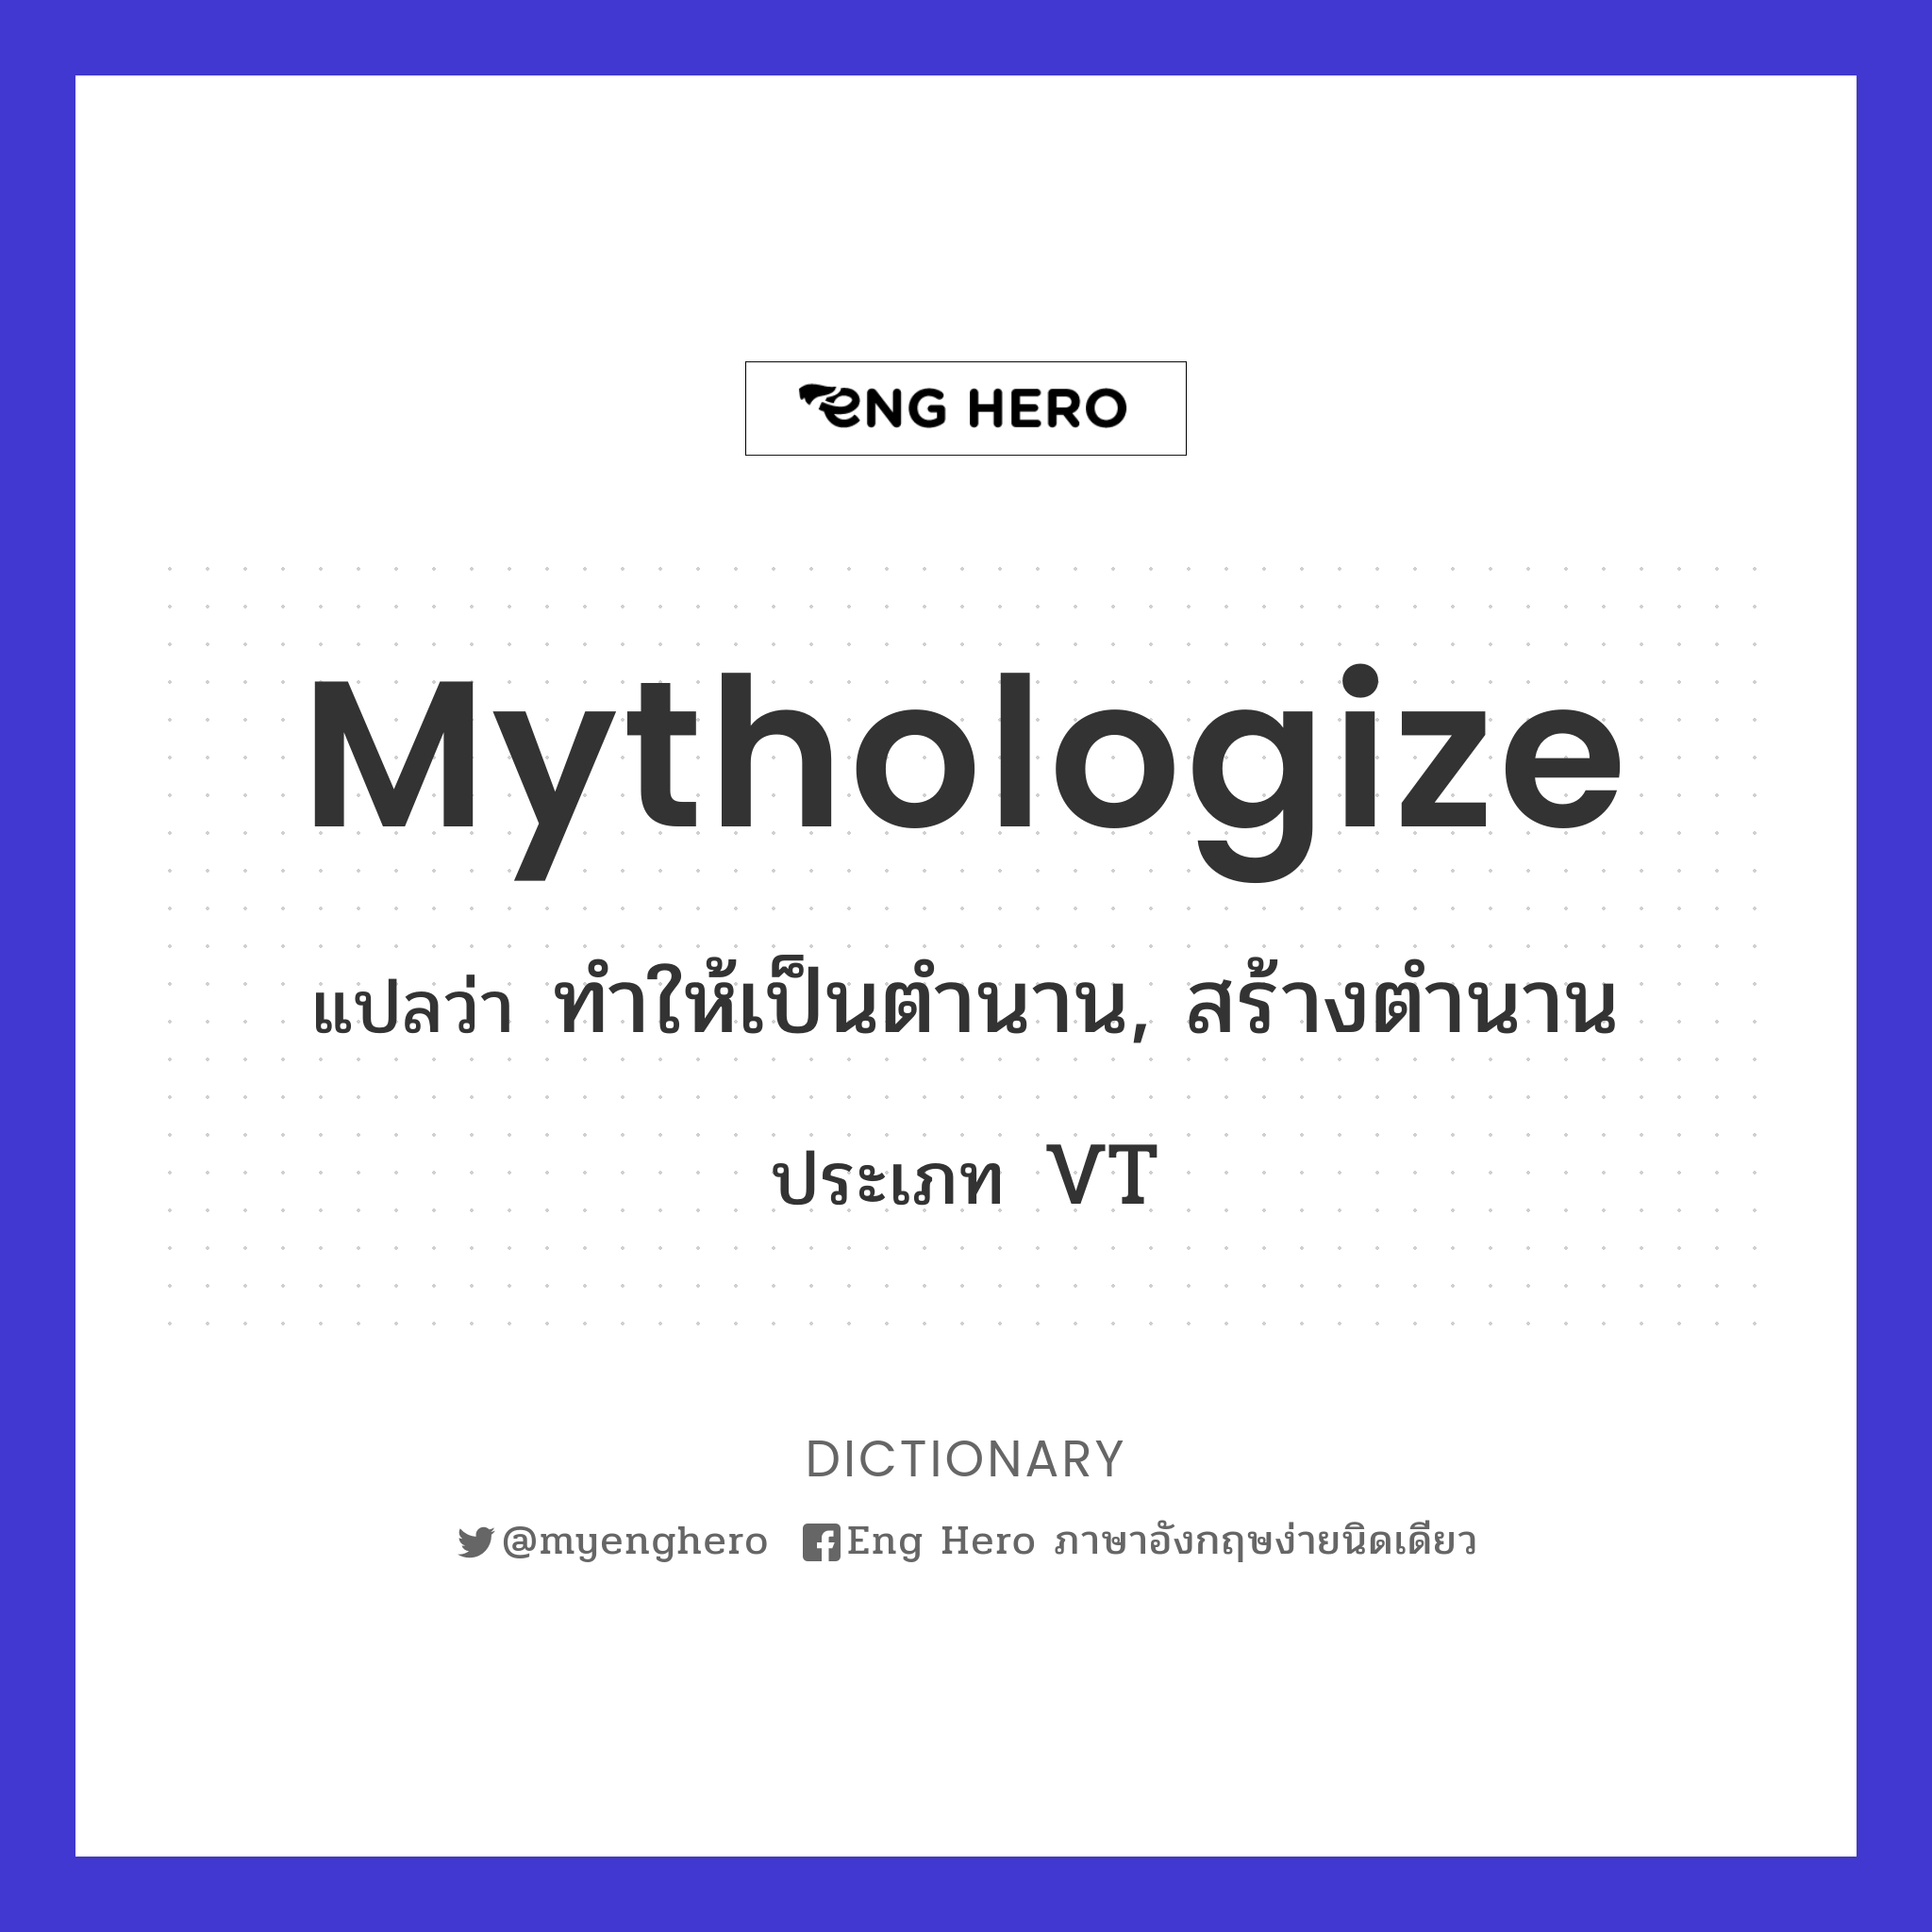 mythologize